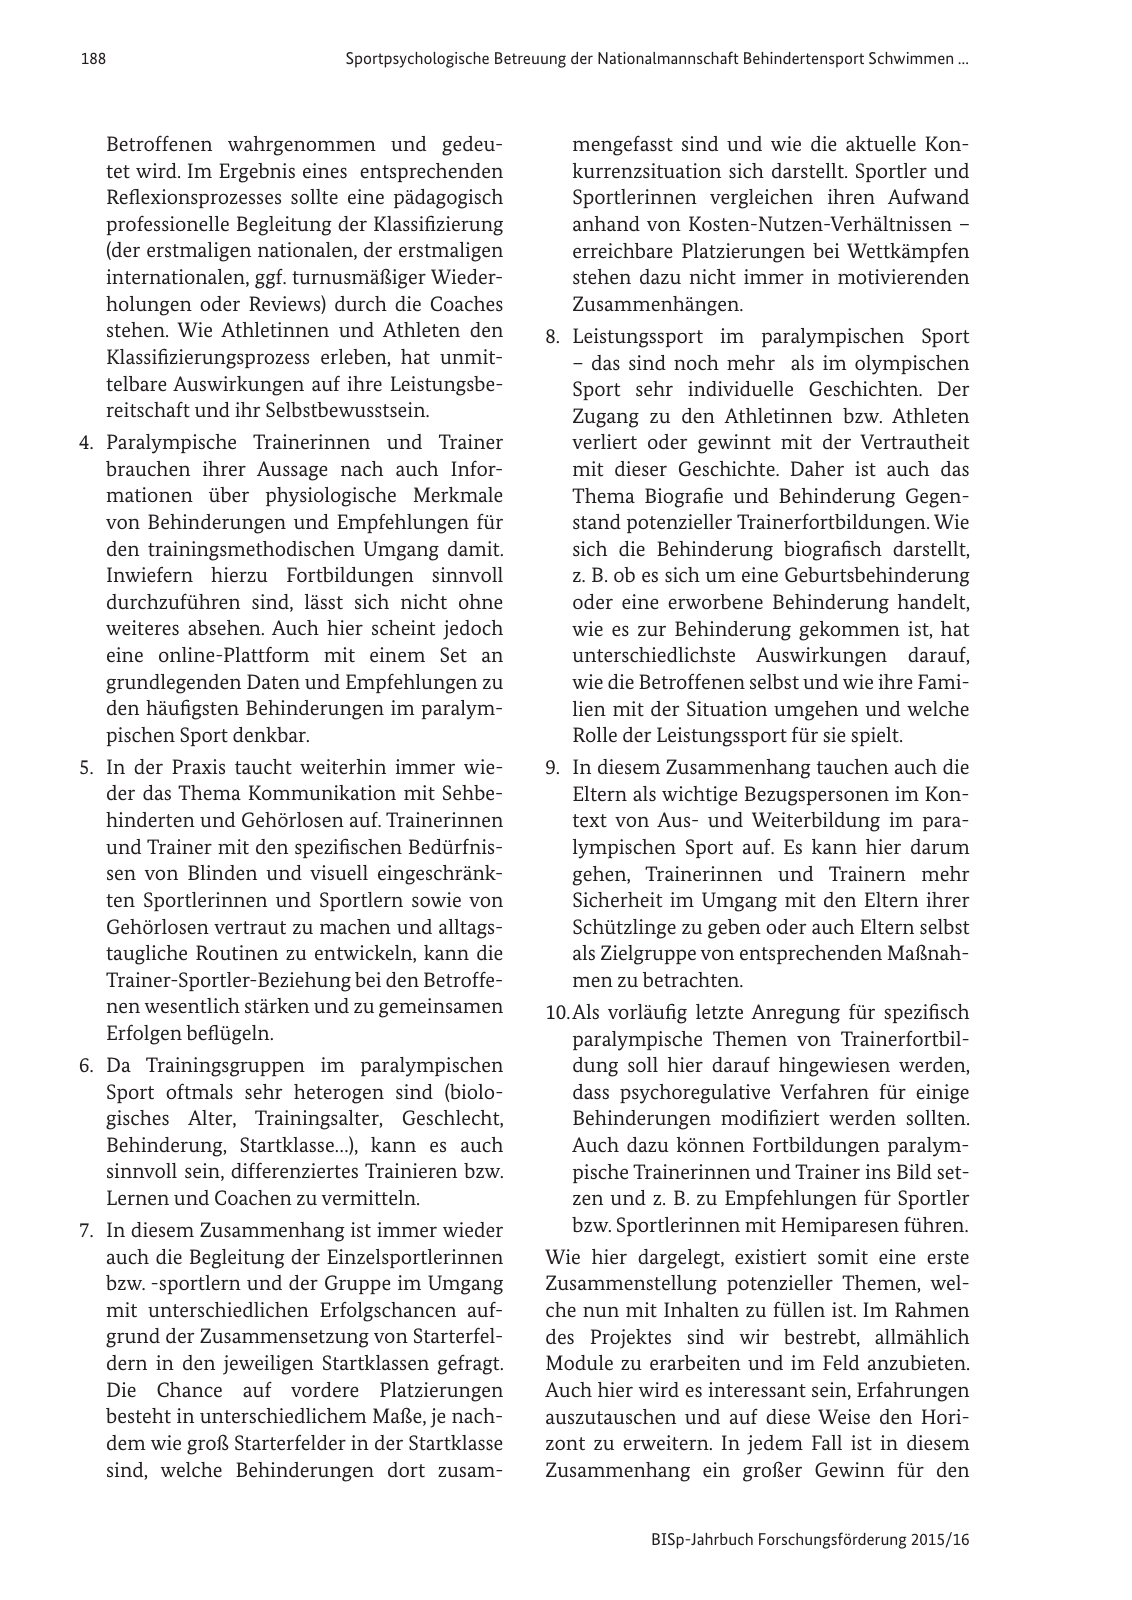 Vorschau BISp-Jahrbuch Forschungsförderung 2015/16 Seite 190